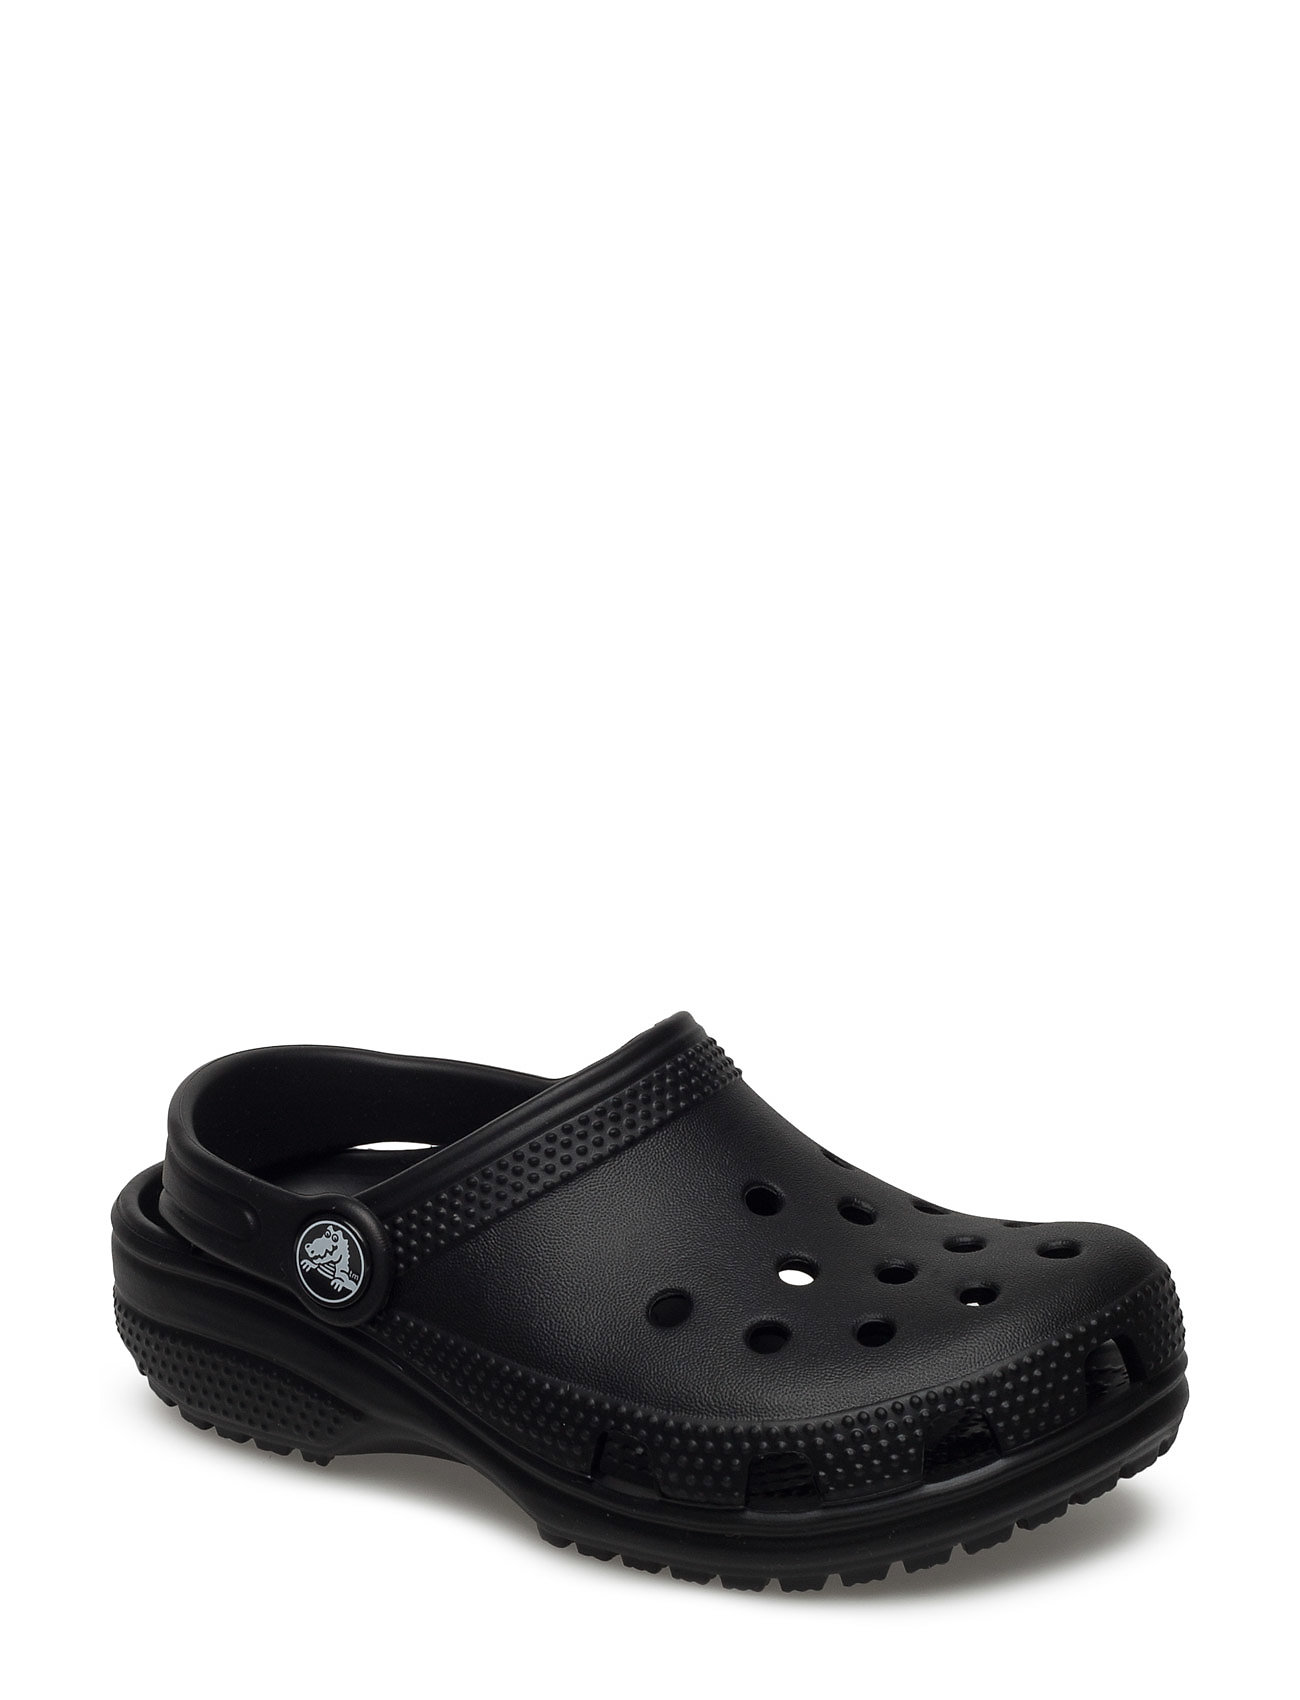 Crocs Classic Clog (Black), (18.89 